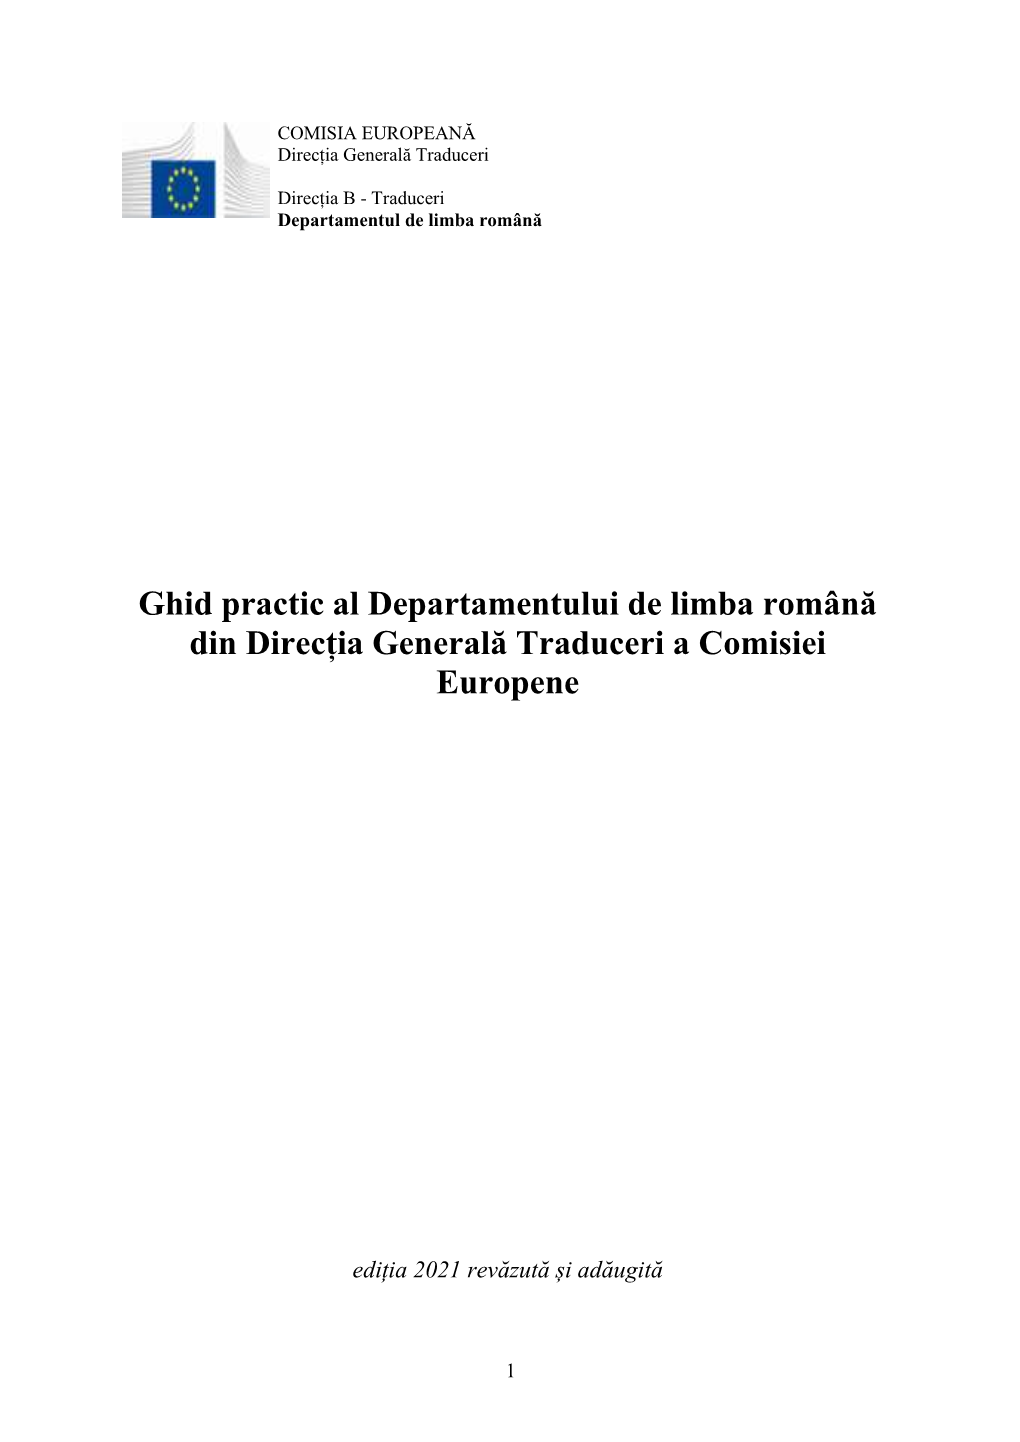 Ghid Practic Al Departamentului De Limba Română Din Direcția Generală Traduceri a Comisiei Europene